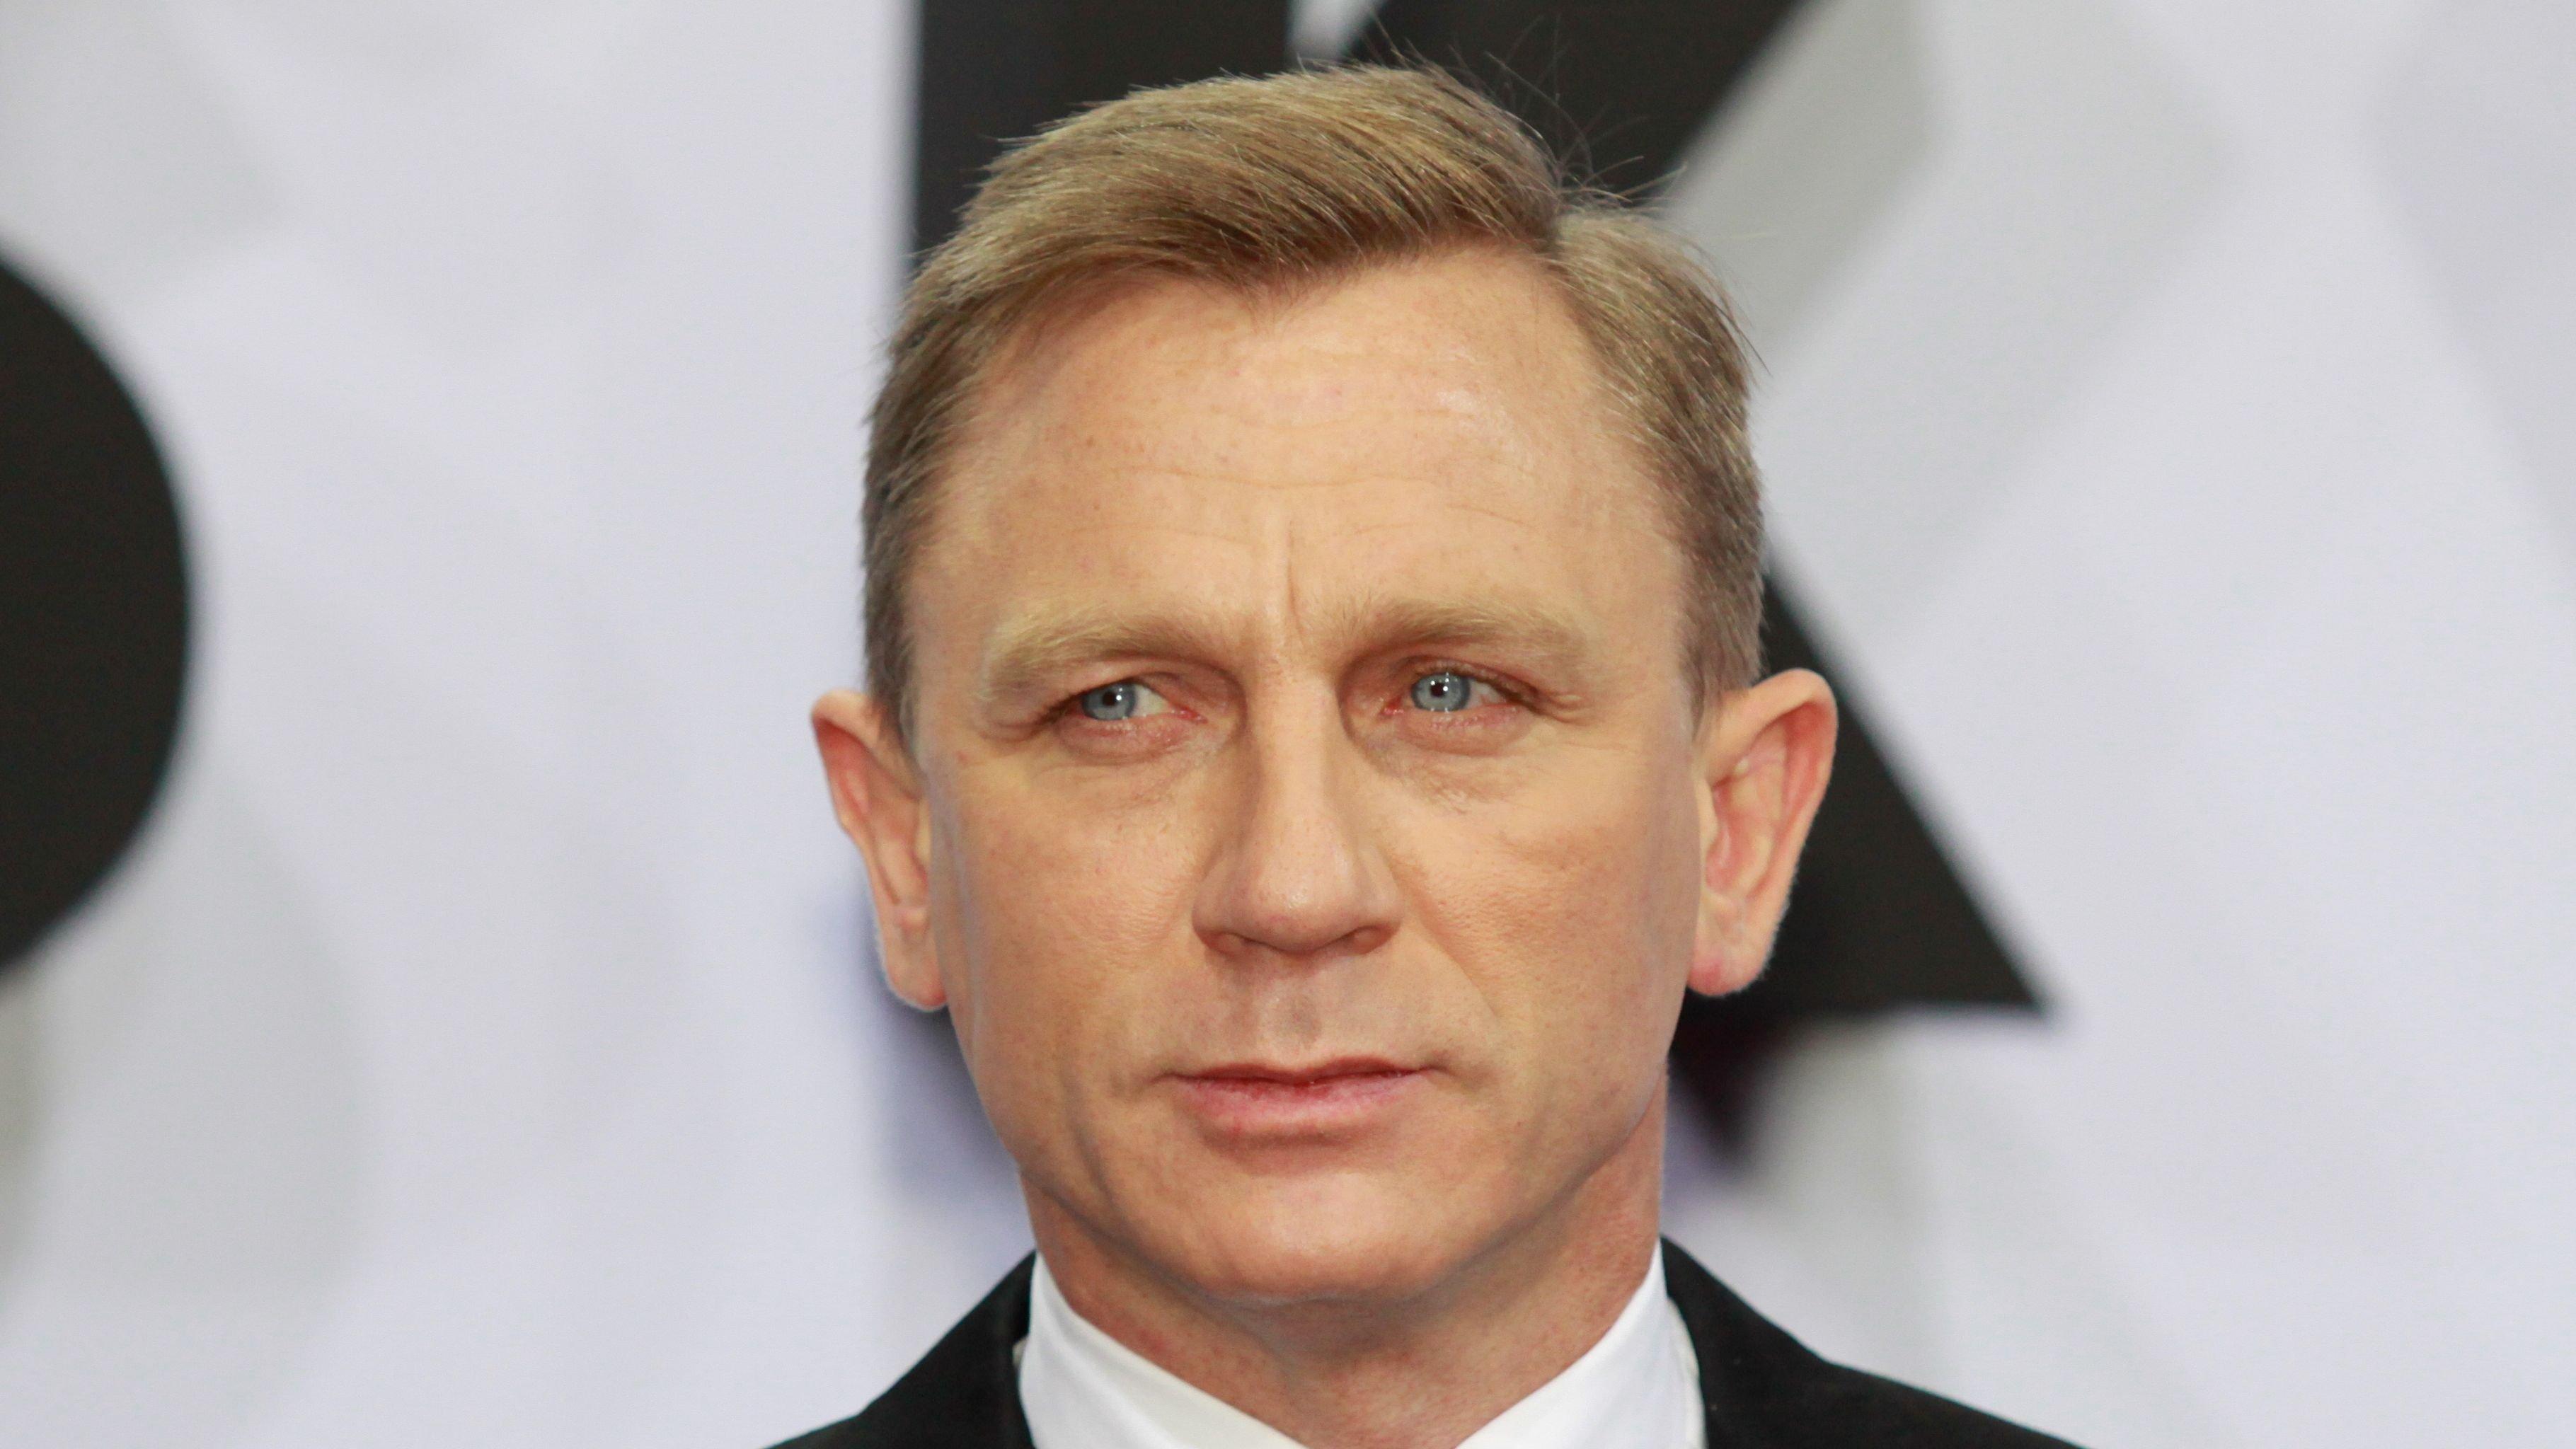 Hollywood star Daniel Craig